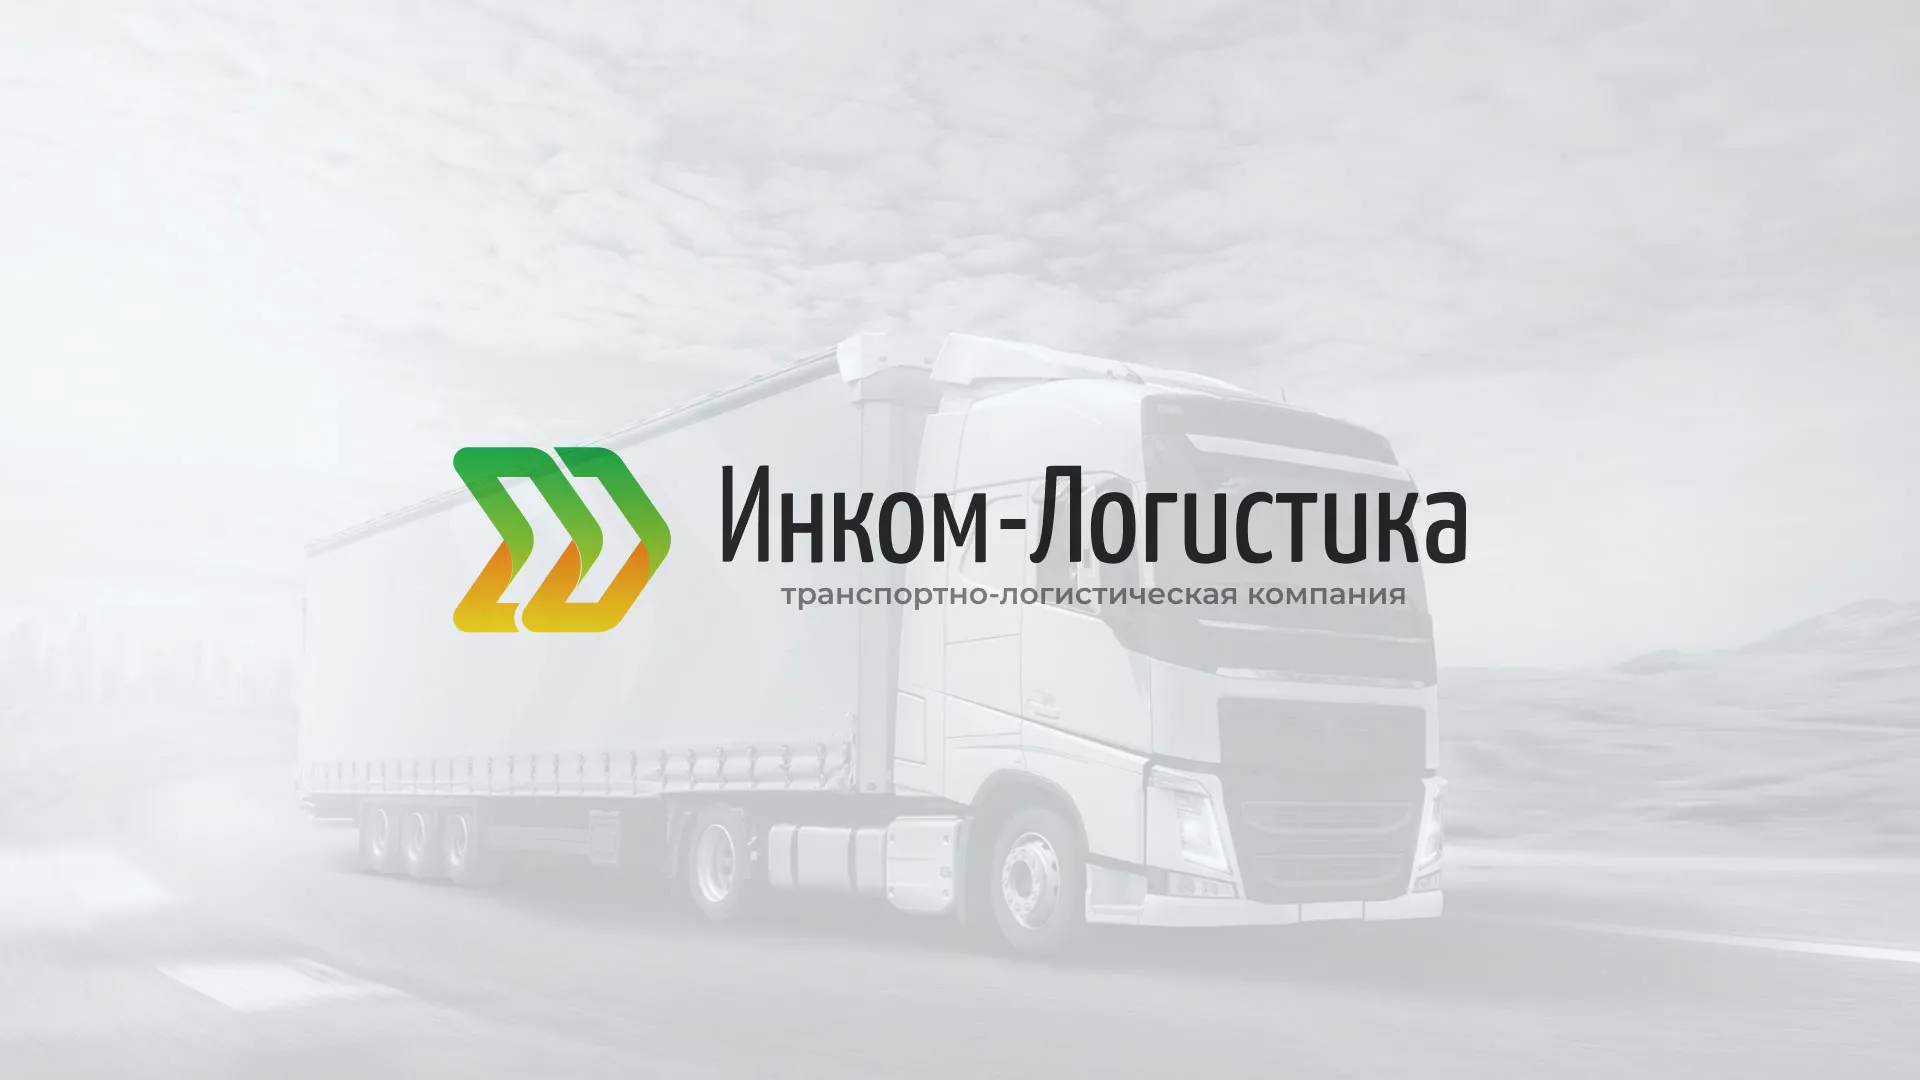 Разработка логотипа и сайта компании «Инком-Логистика» в Брянске